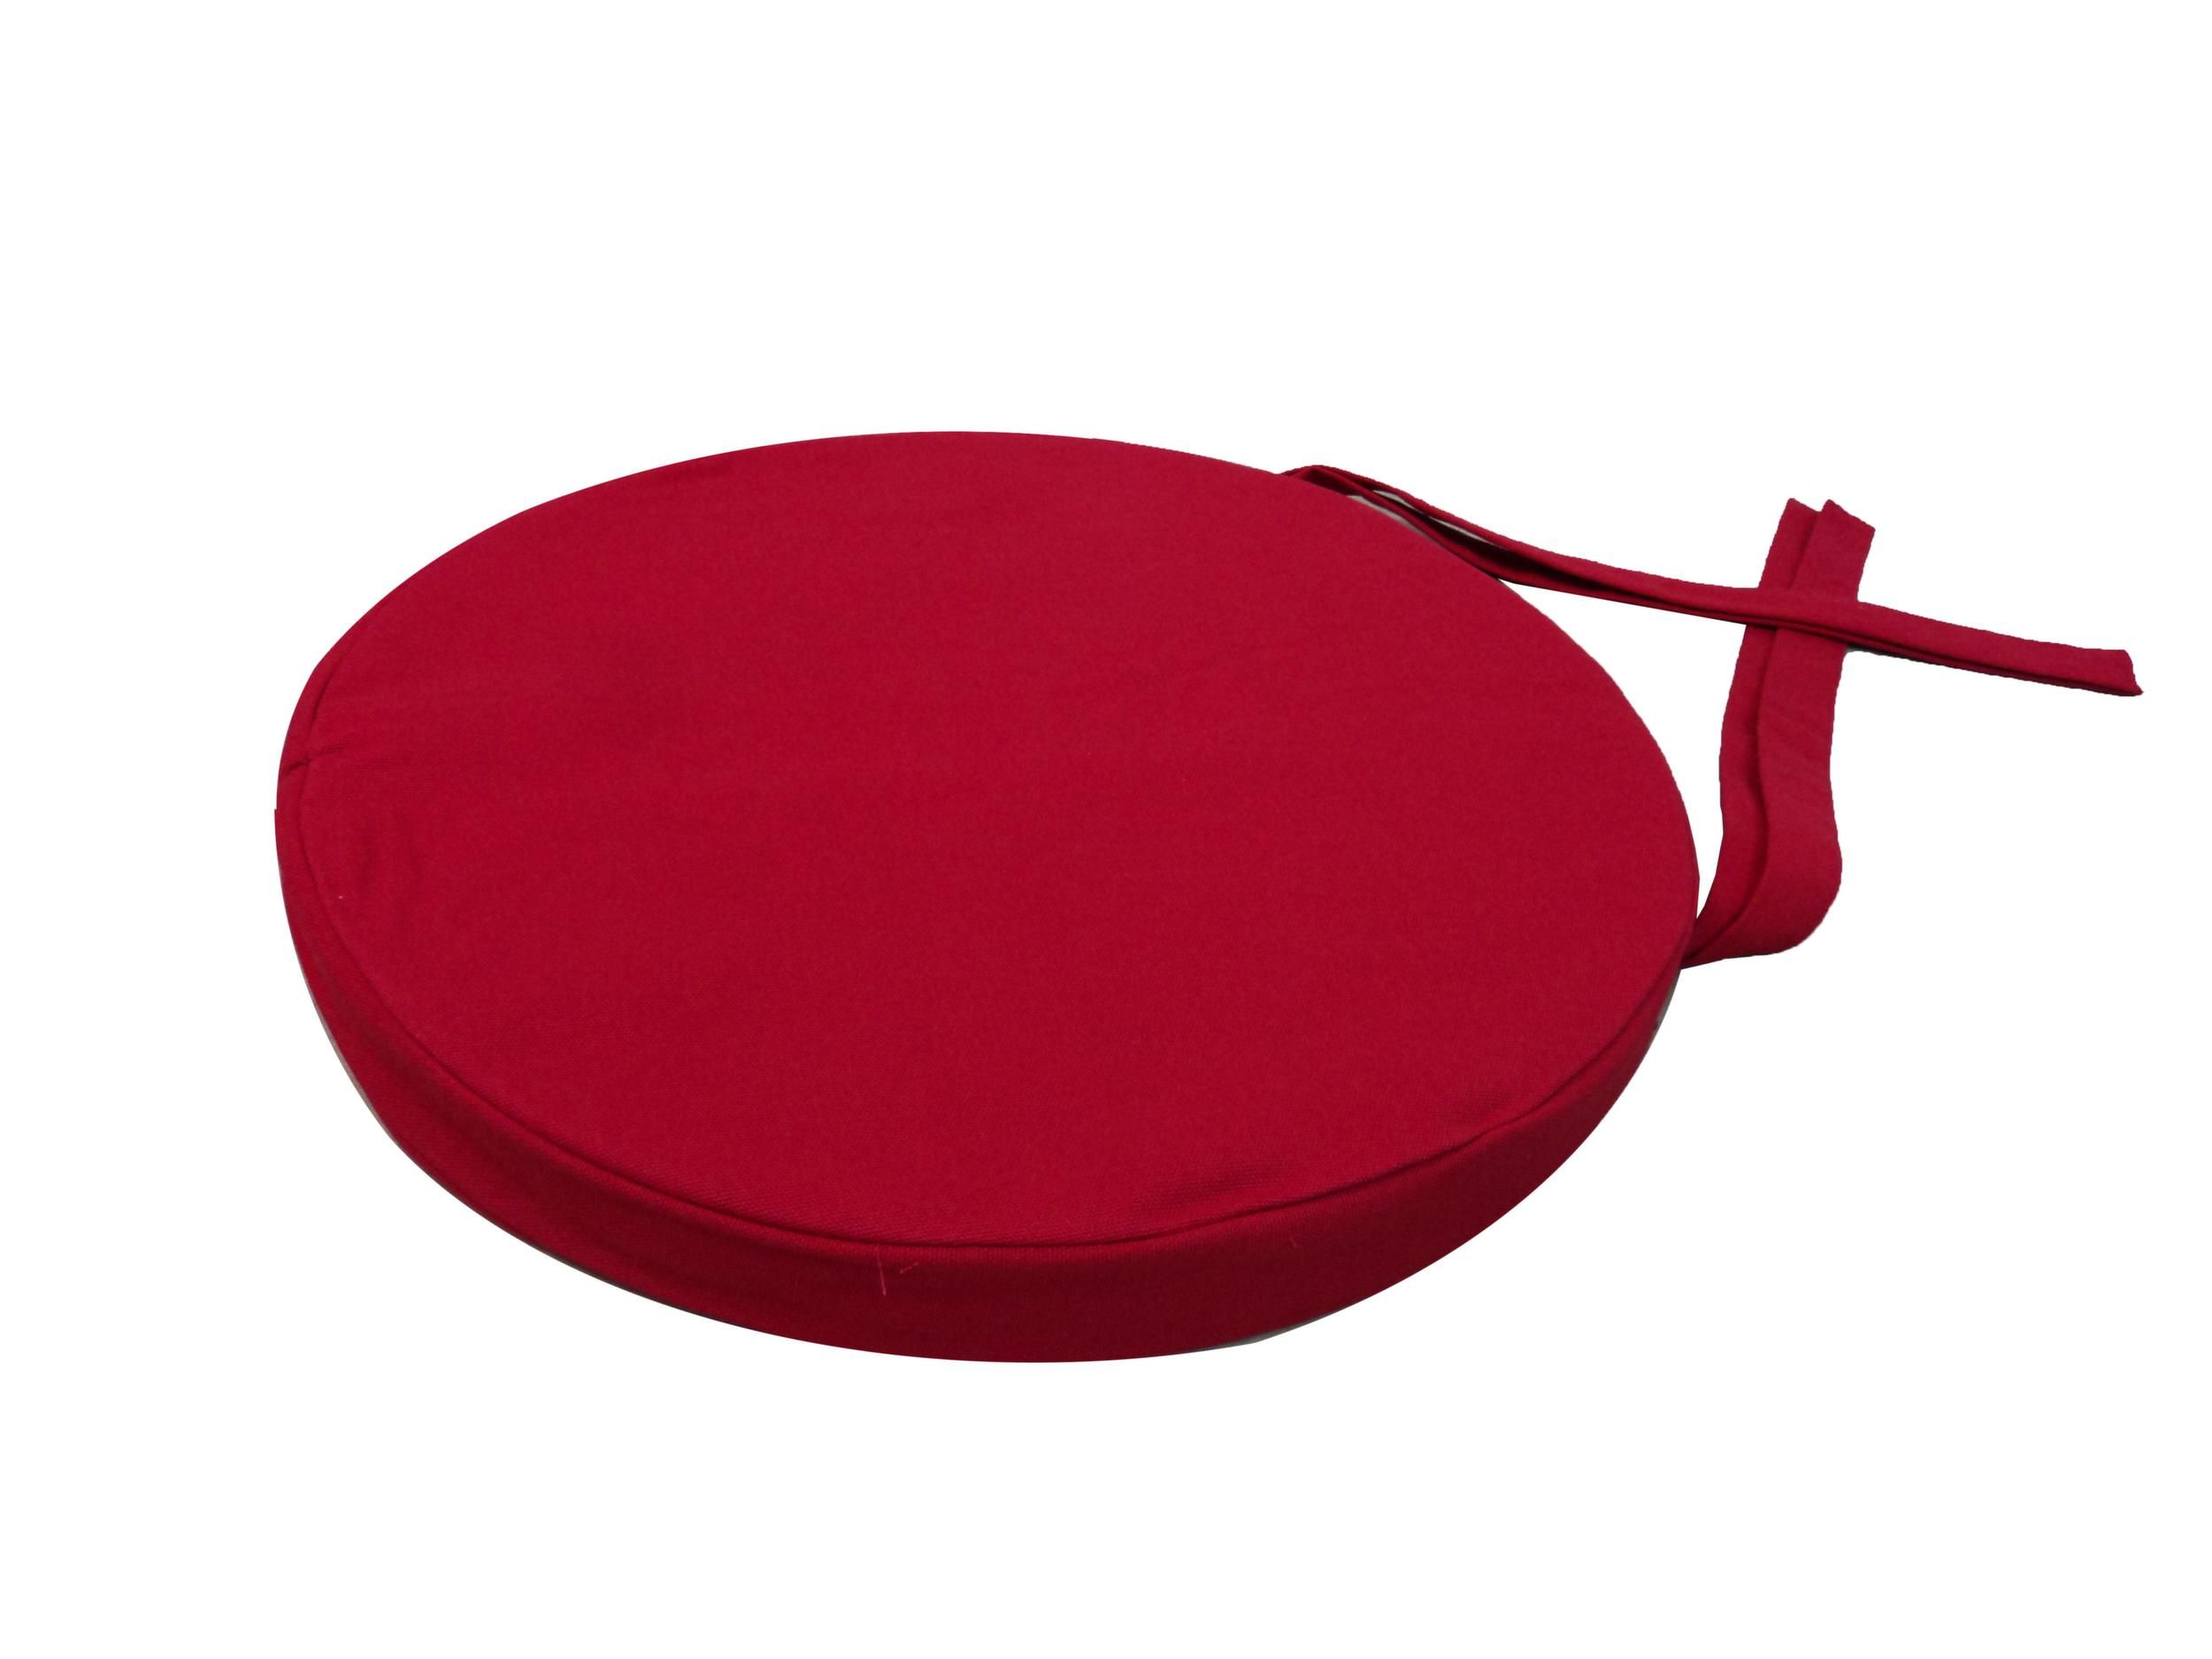 Galette de chaise ronde en coton 40 cm (lot de 6) (rouge)